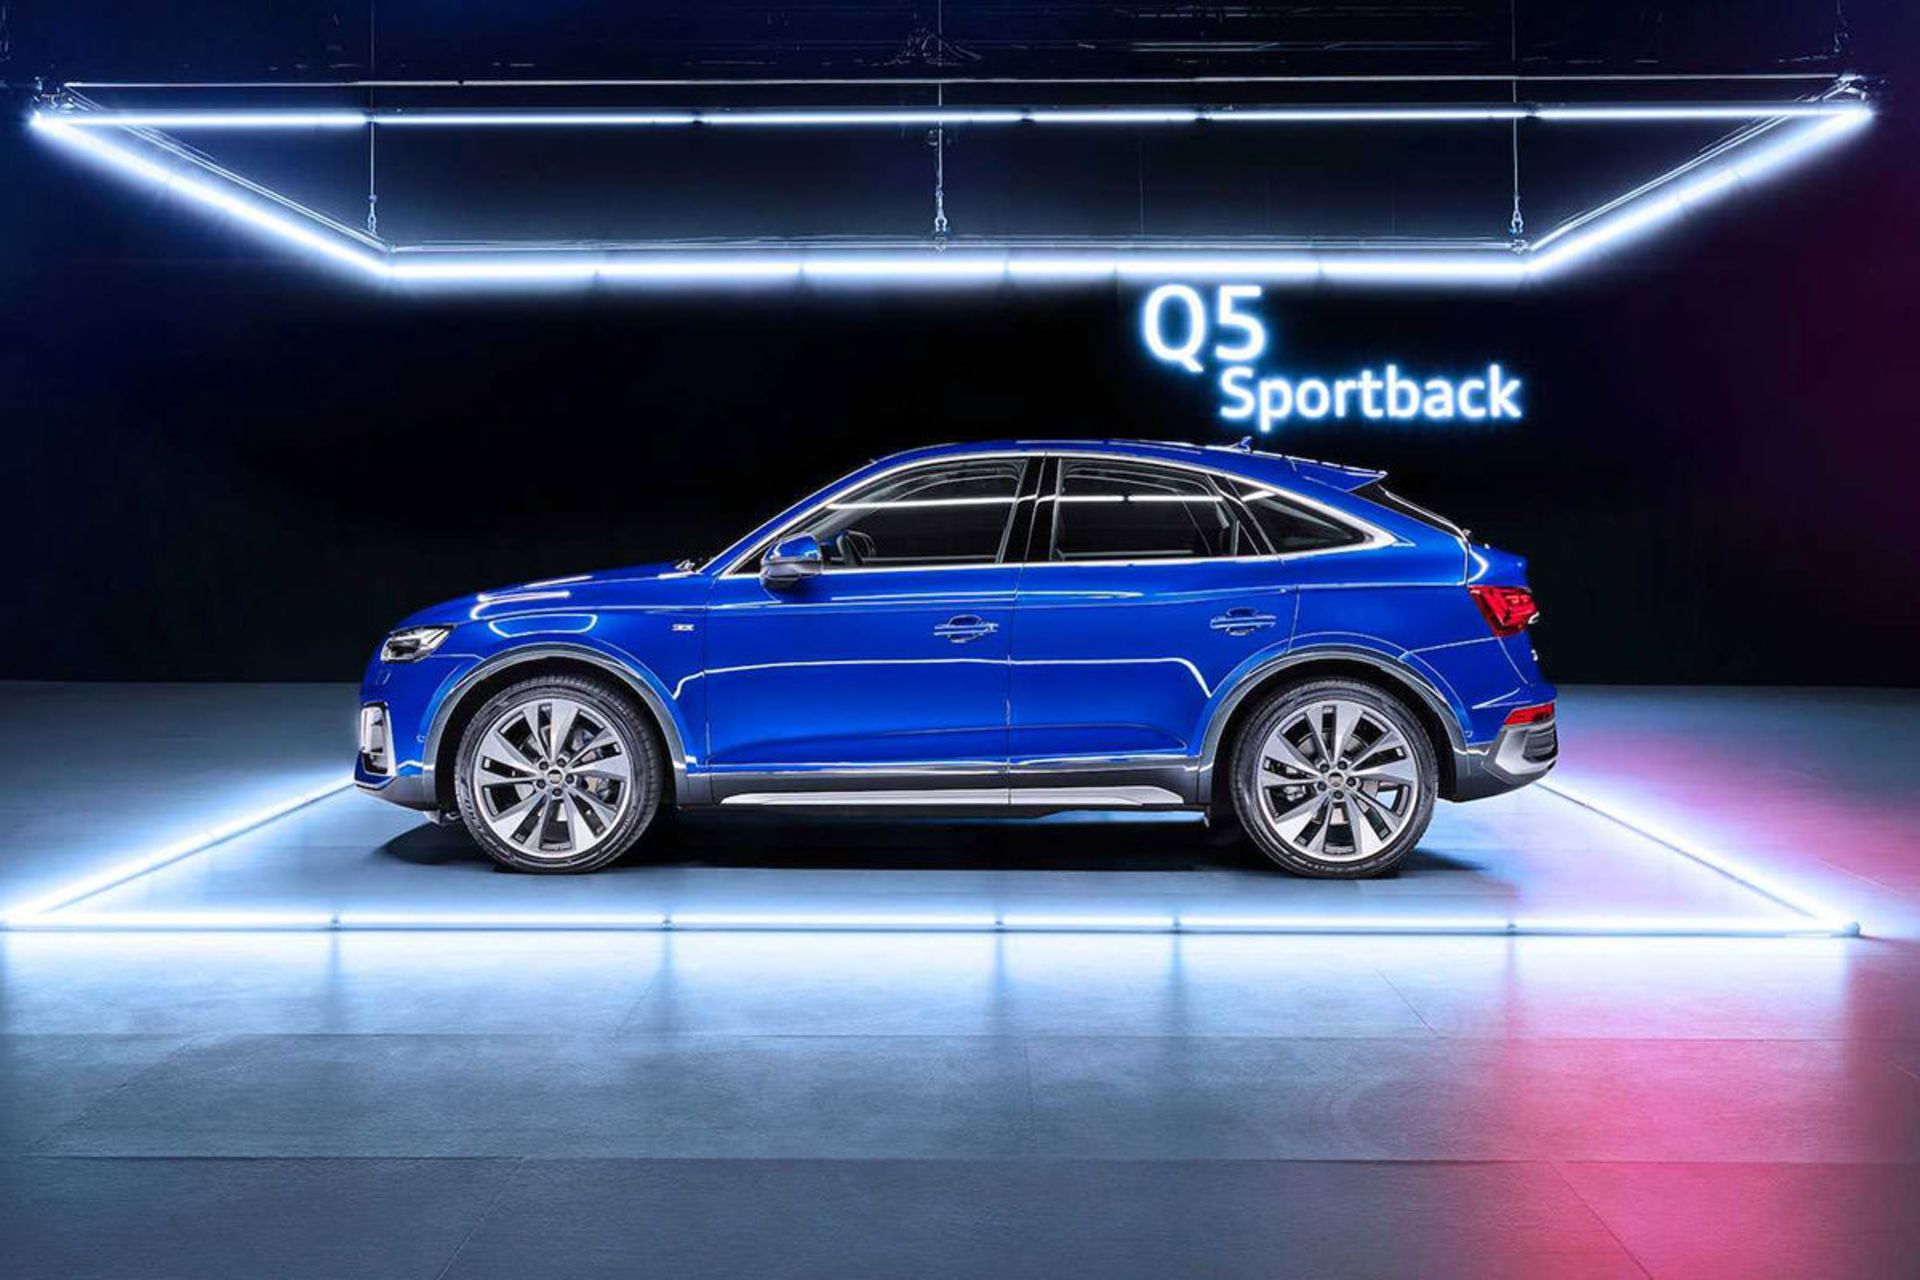 مرجع متخصصين ايران نماي جانبي كراس اور آئودي كيو 5 اسپرت بك / 2021 Audi Q5 Sportback آبي رنگ